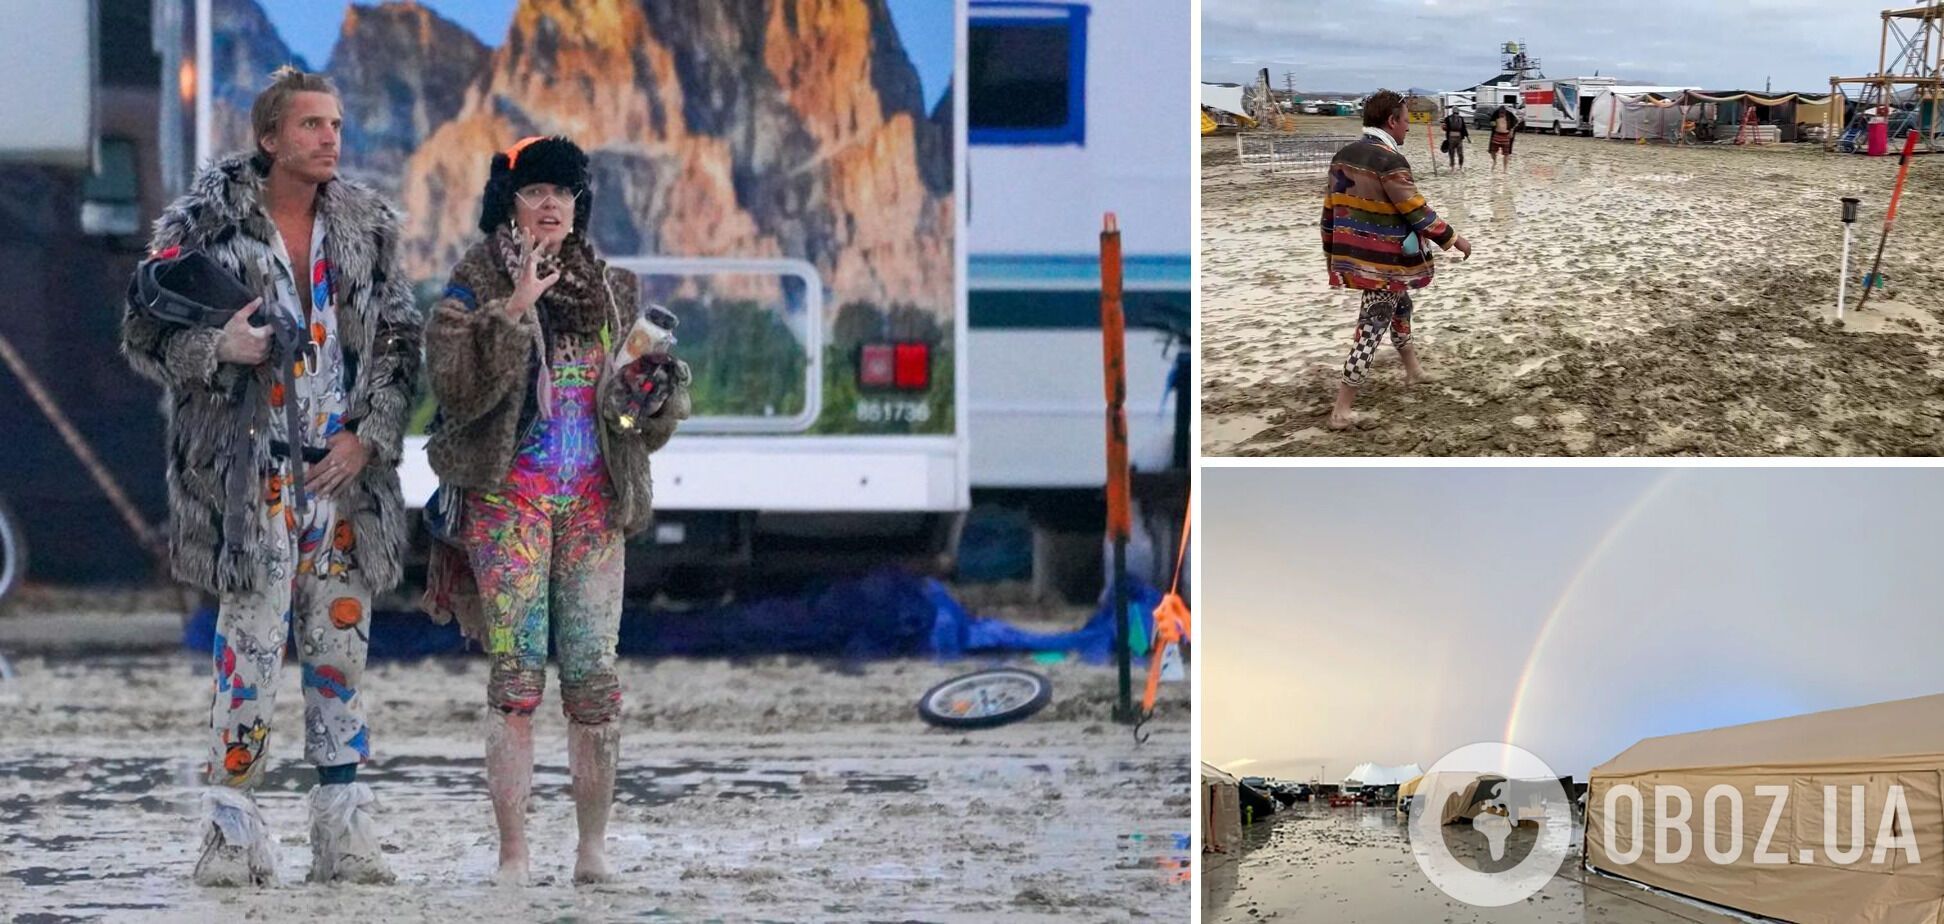 В США десятки тысяч участников Burning Man застряли в пустыне из-за ливней, есть погибший: людей призвали экономить воду и еду. Фото